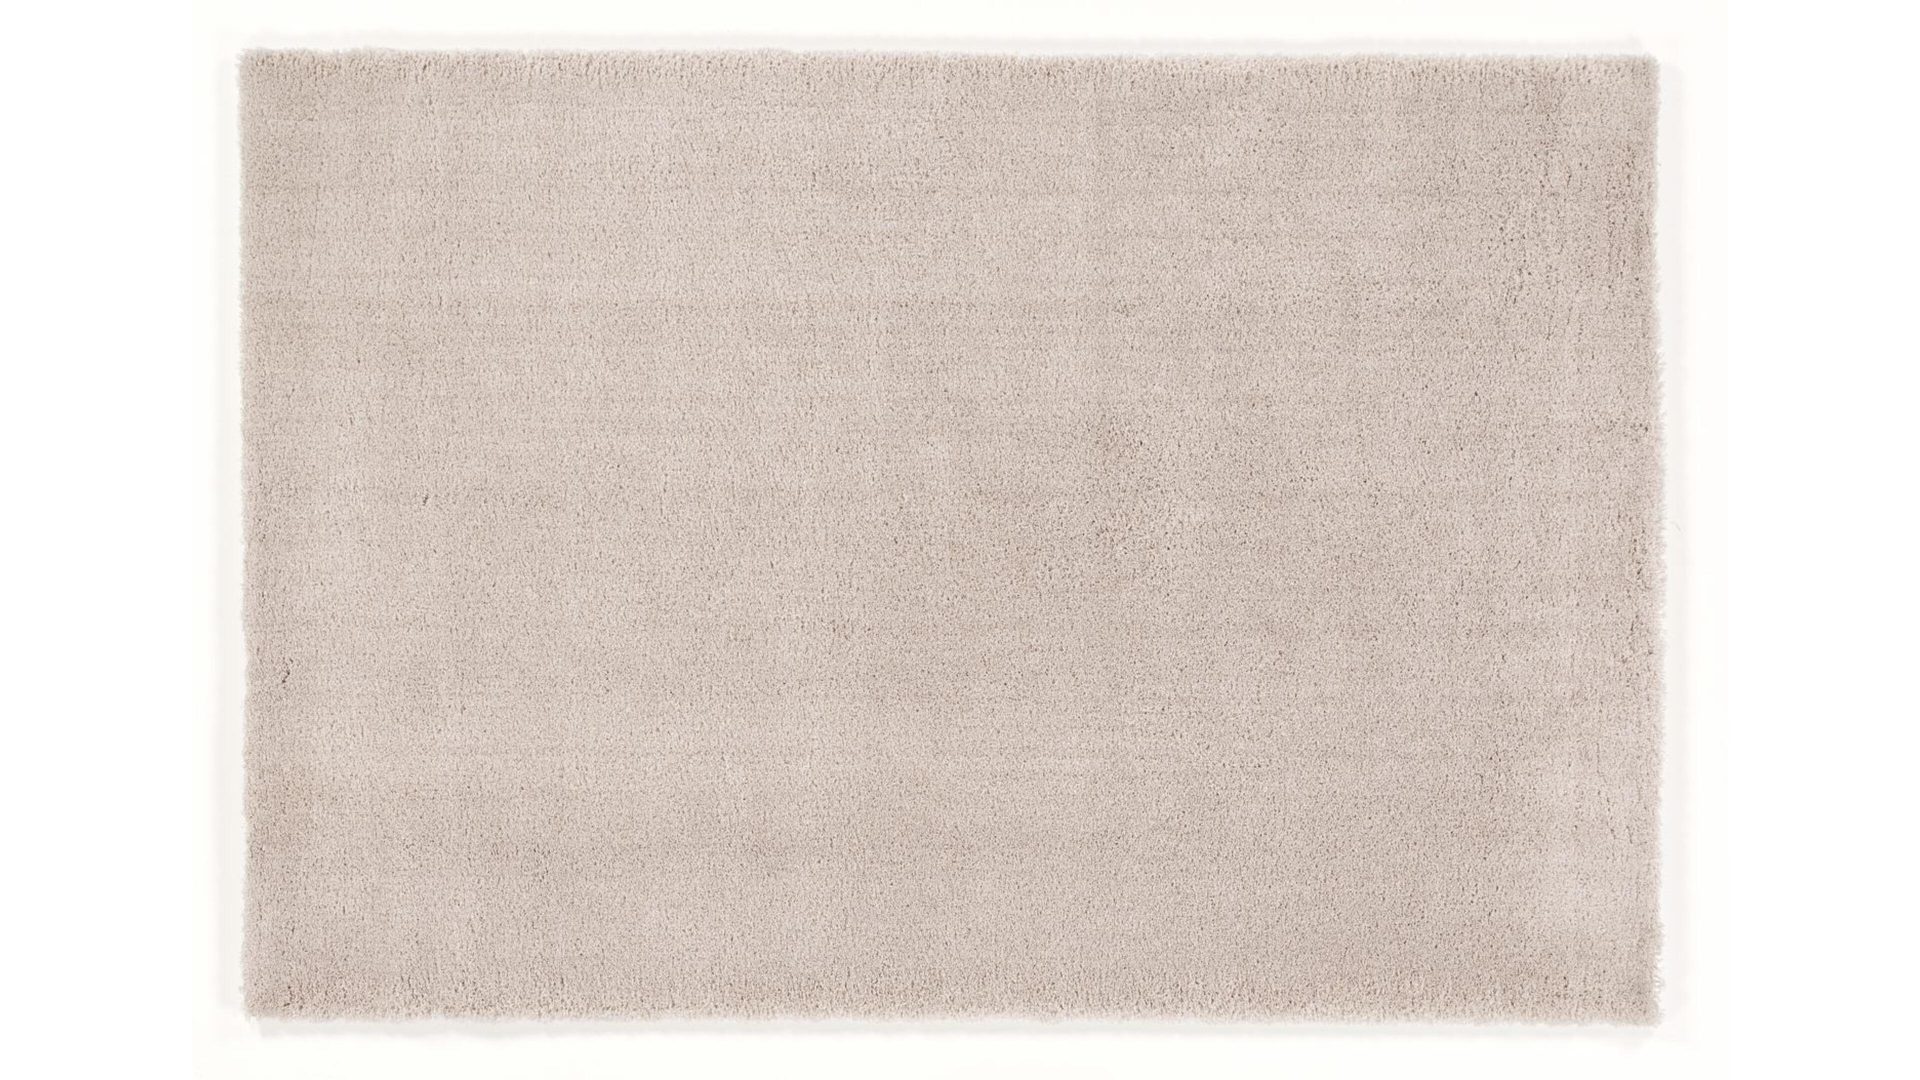 Shaggyteppich Oci aus Kunstfaser in Beige Shaggyteppich Royal Shaggy beige Kunstfaser – ca. 80 x 150 cm